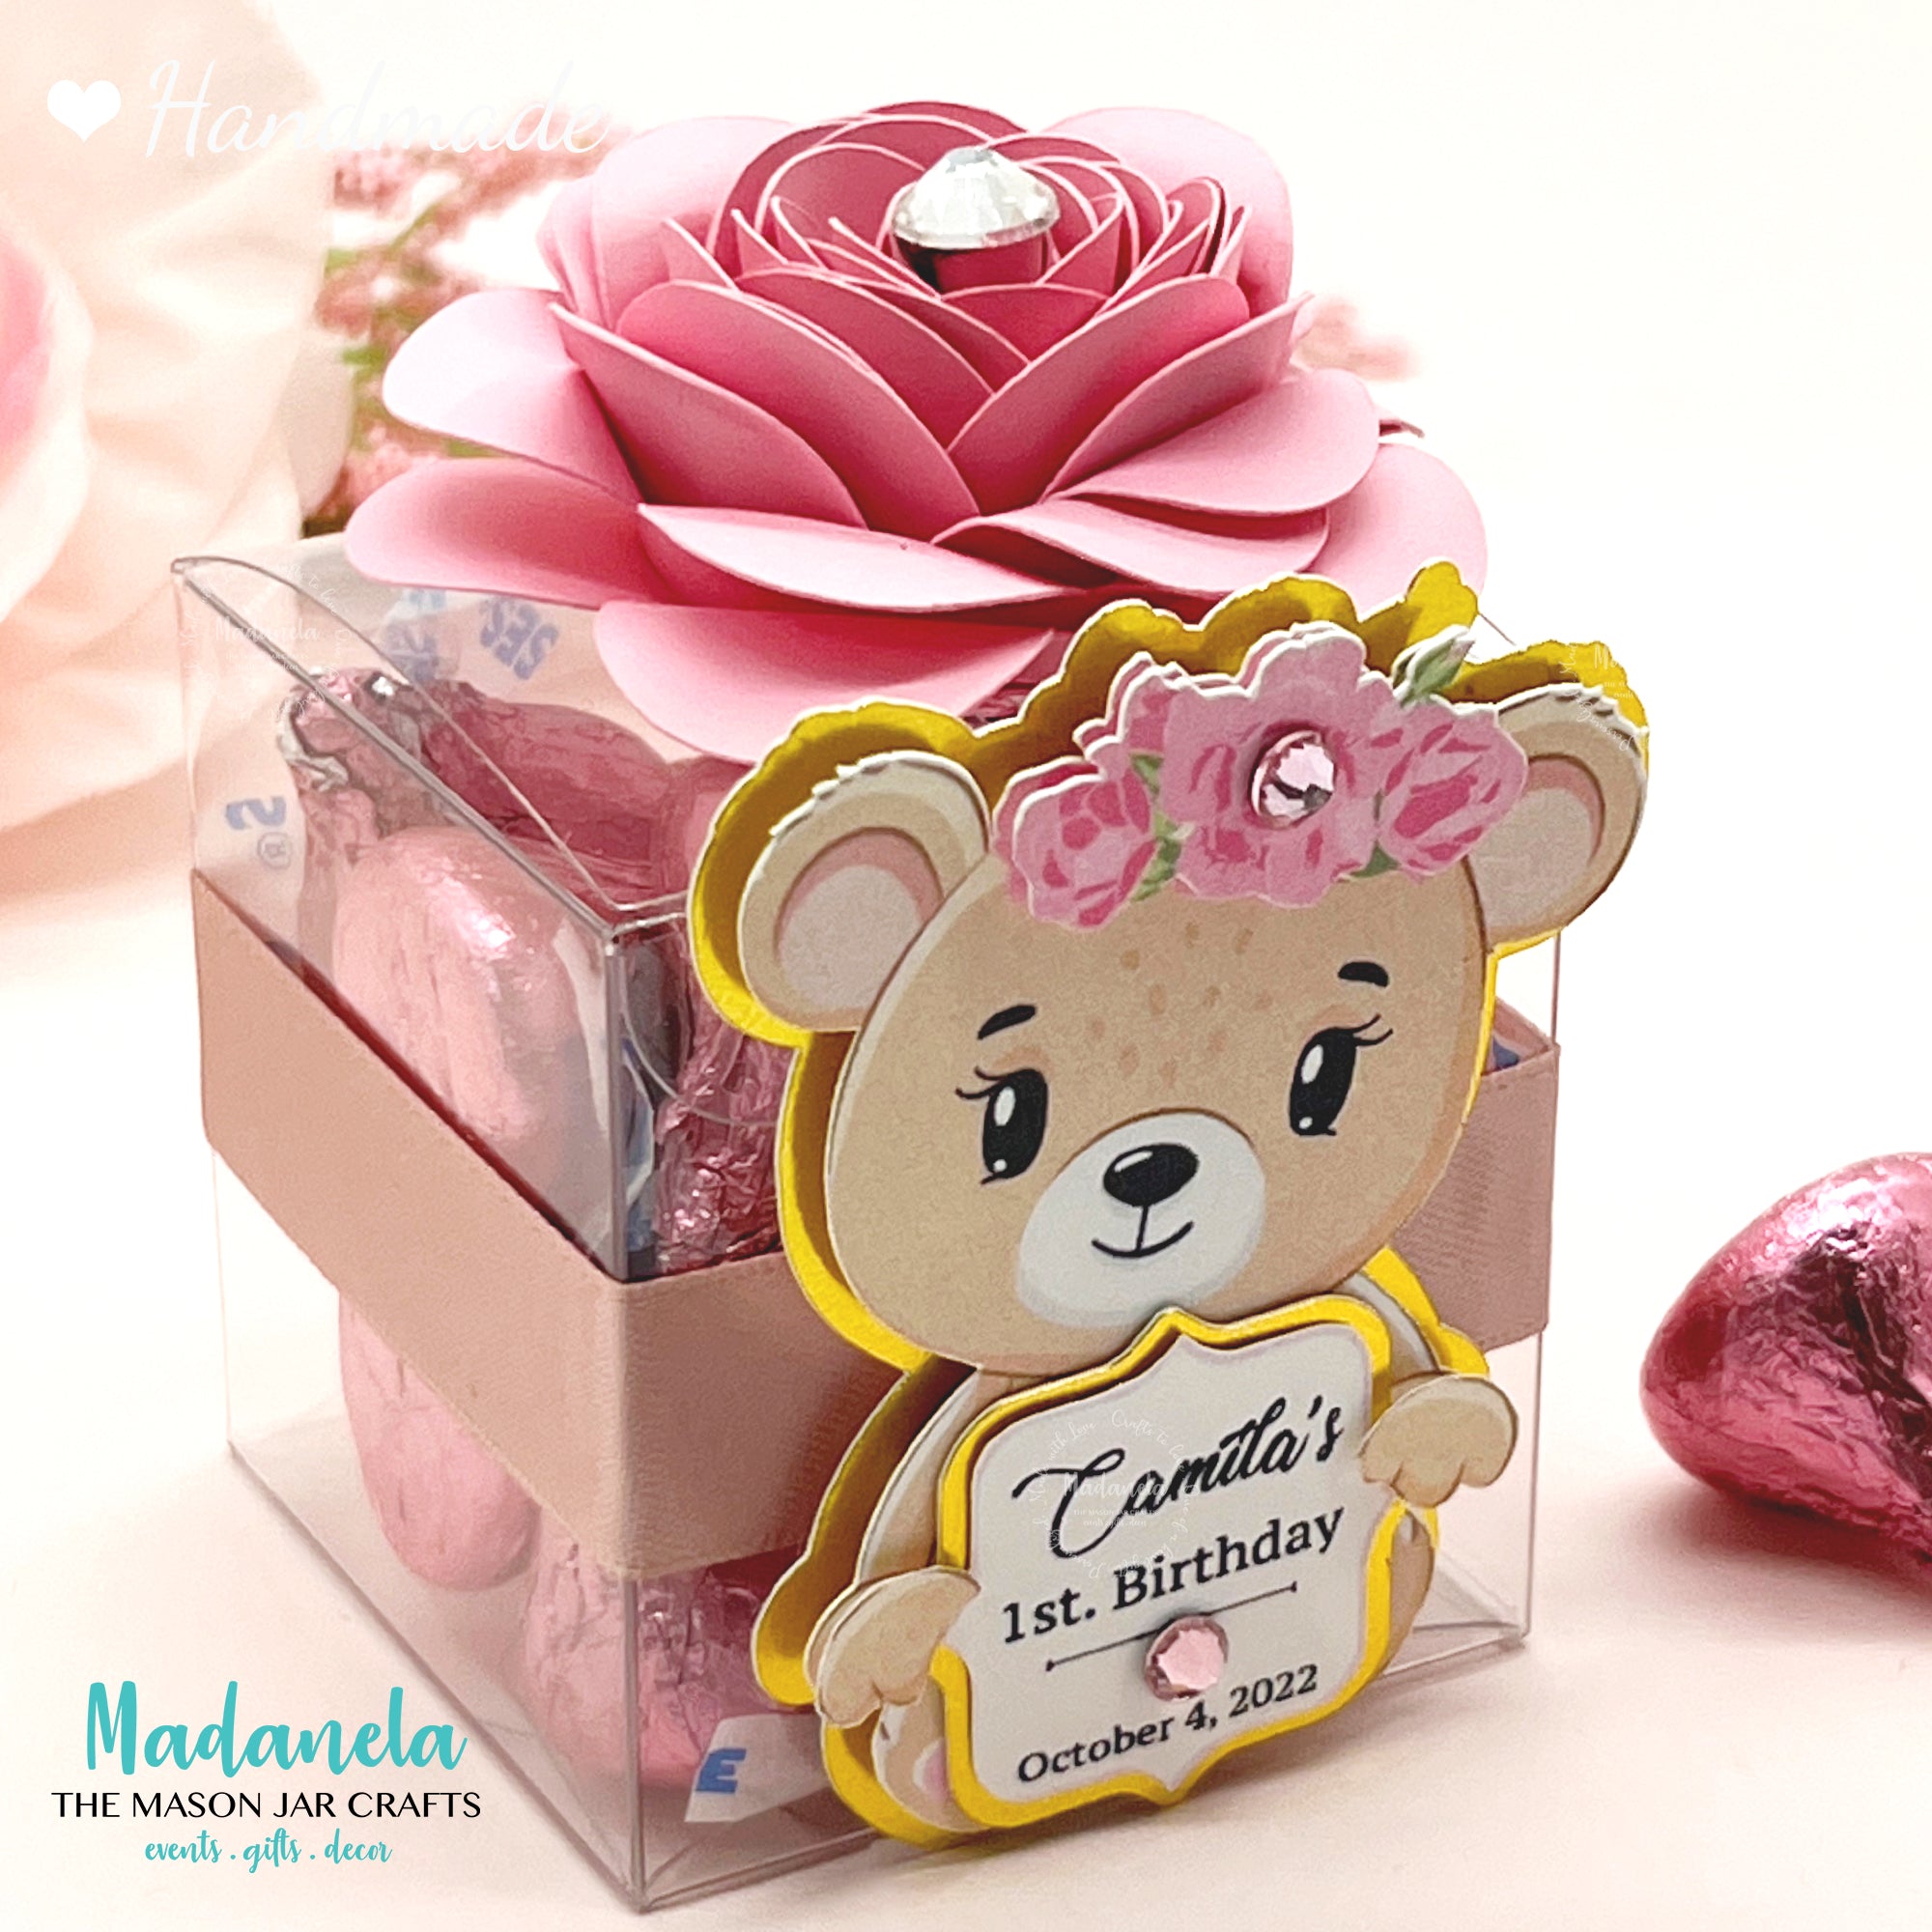 $25 Cardthartic Teddy Bear Gift Card - Cardthartic